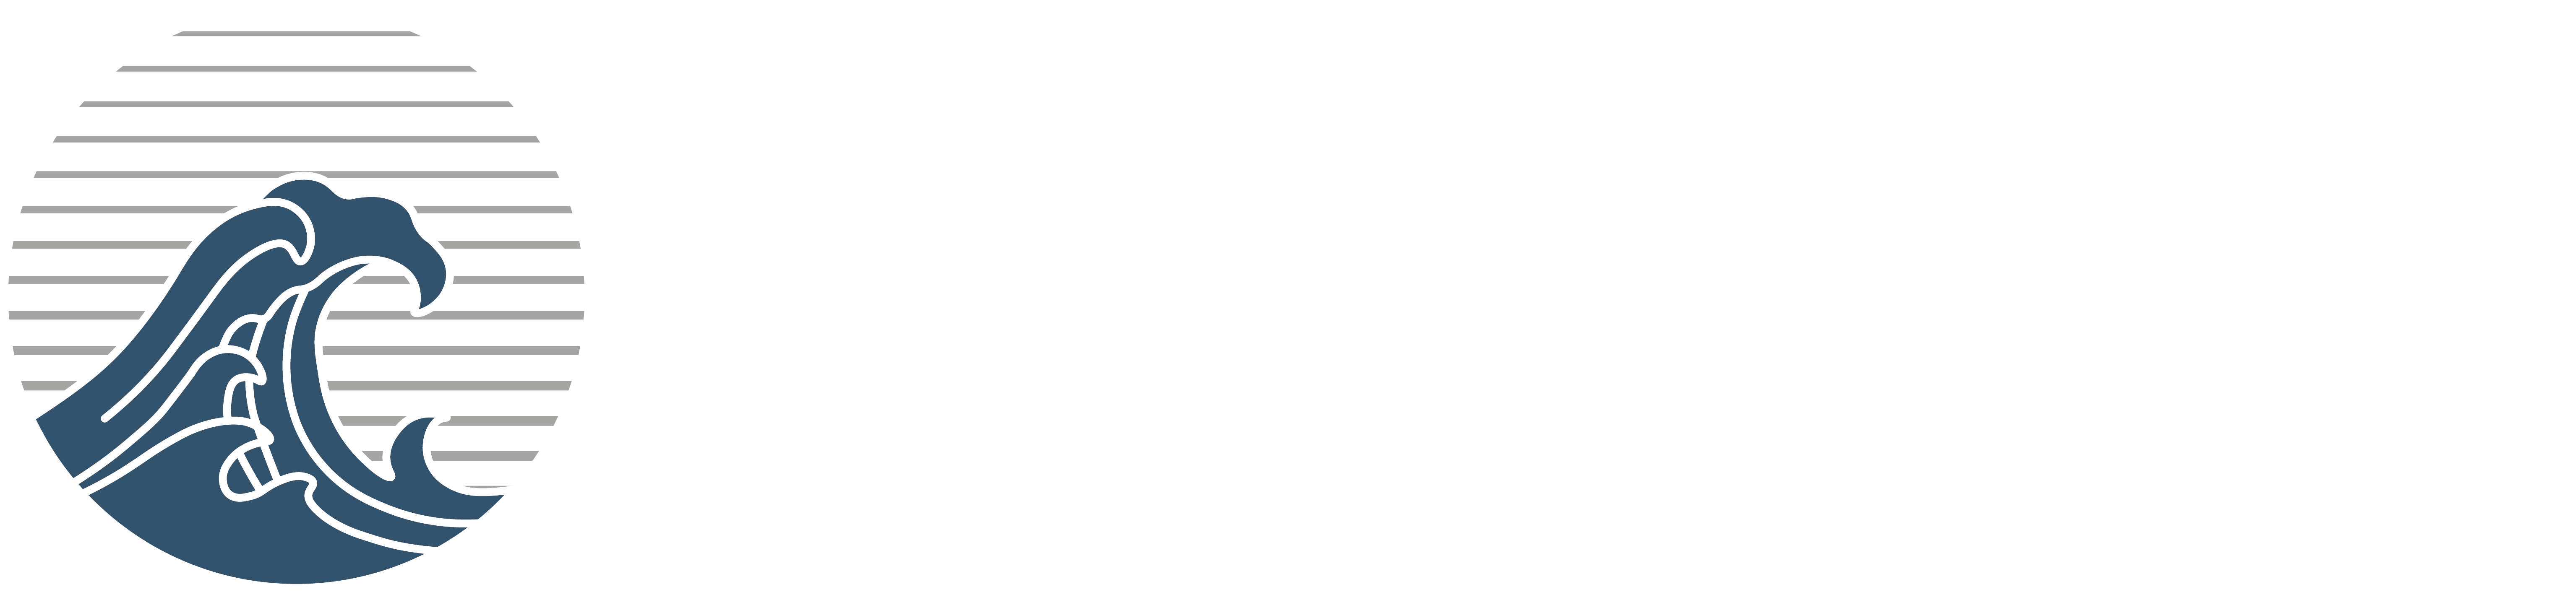 Wave Plumbing & Bathrooms LTD